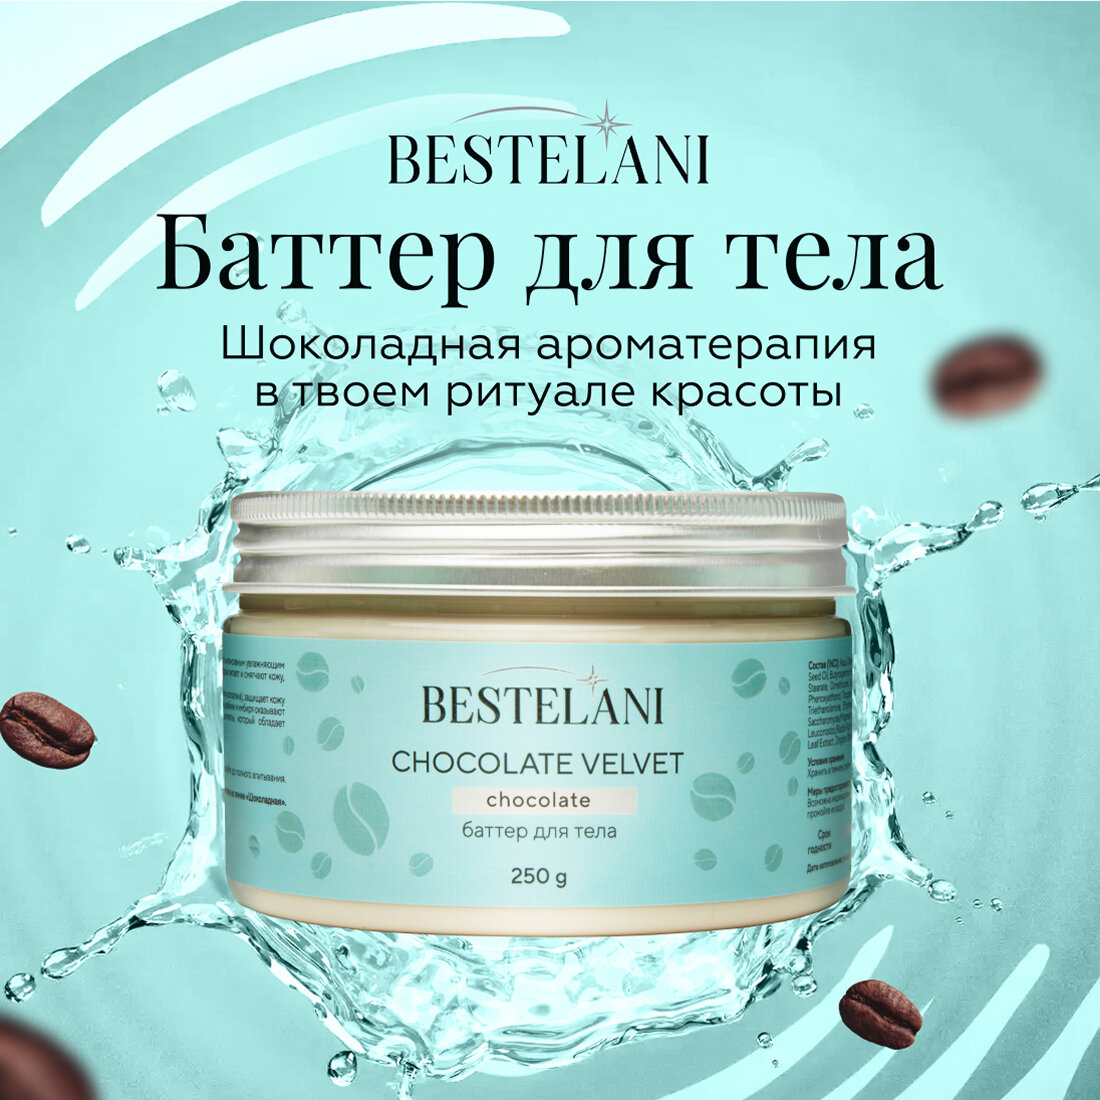 Баттер для тела "Chocolate velvet" от бренда "Bestelani", 250 мл